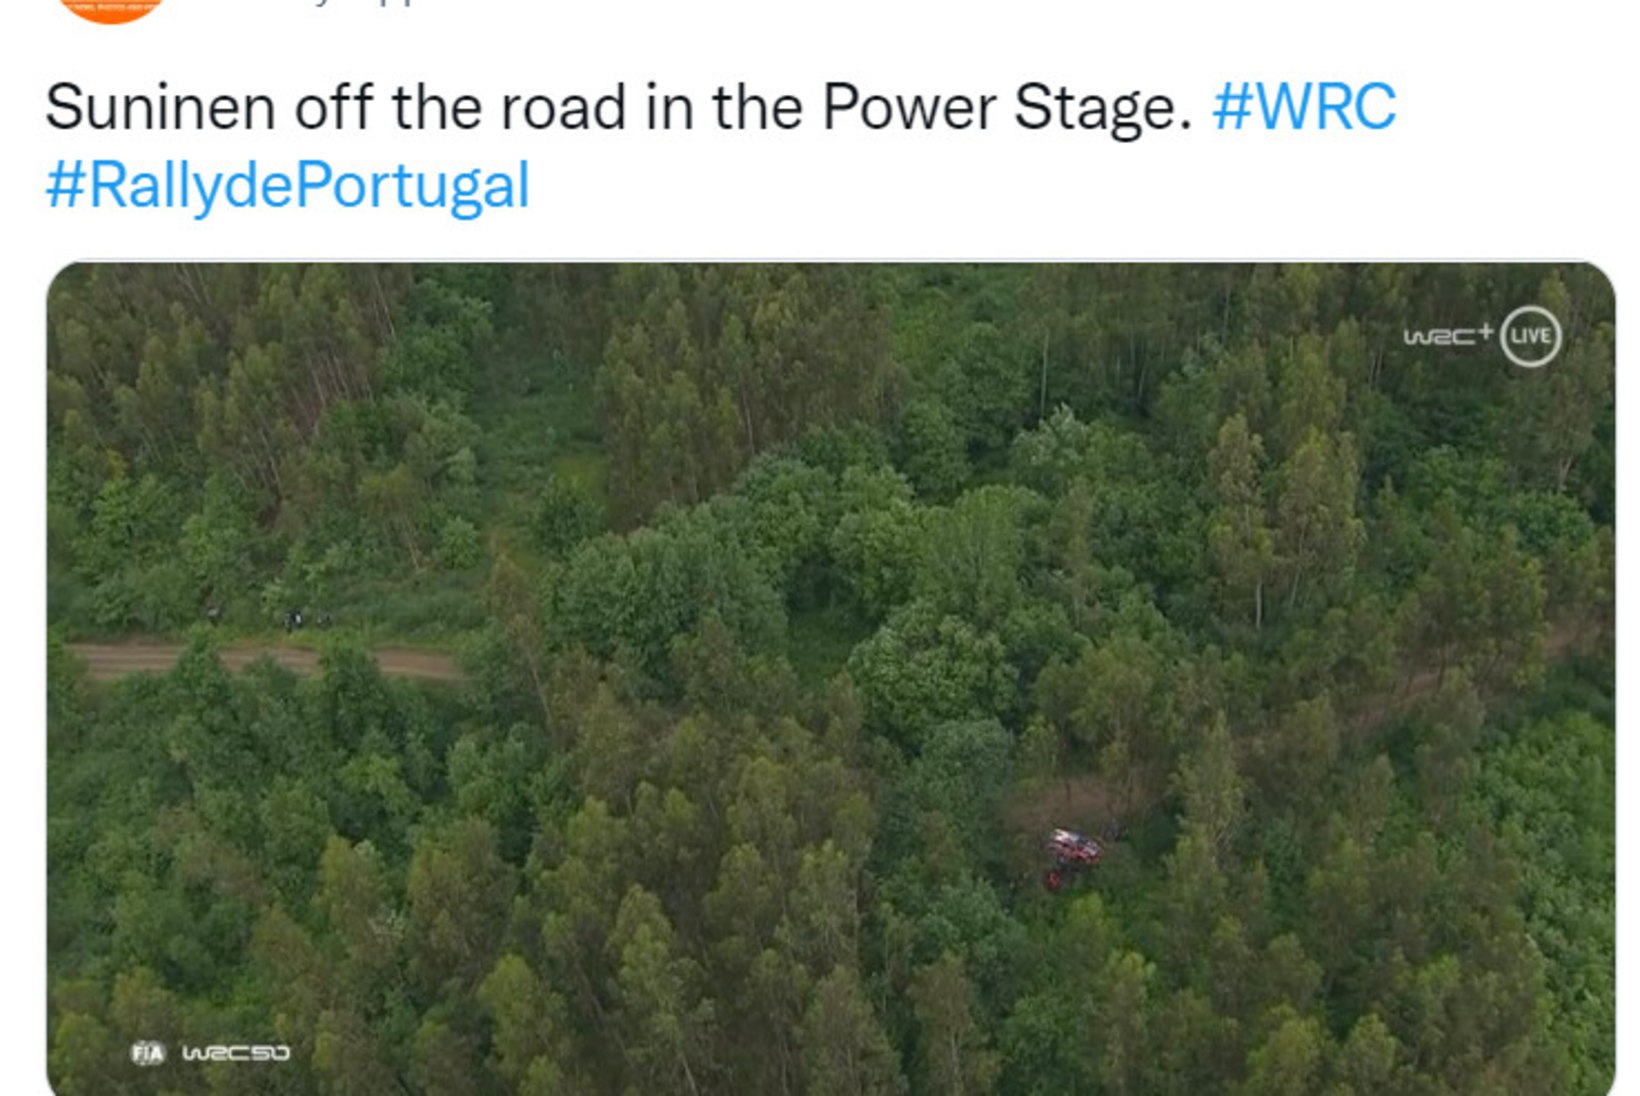 Portugali etapp Tänakule rõõmu ei pakkunud, Rovanperä võitis nii punktikatse kui ka ralli